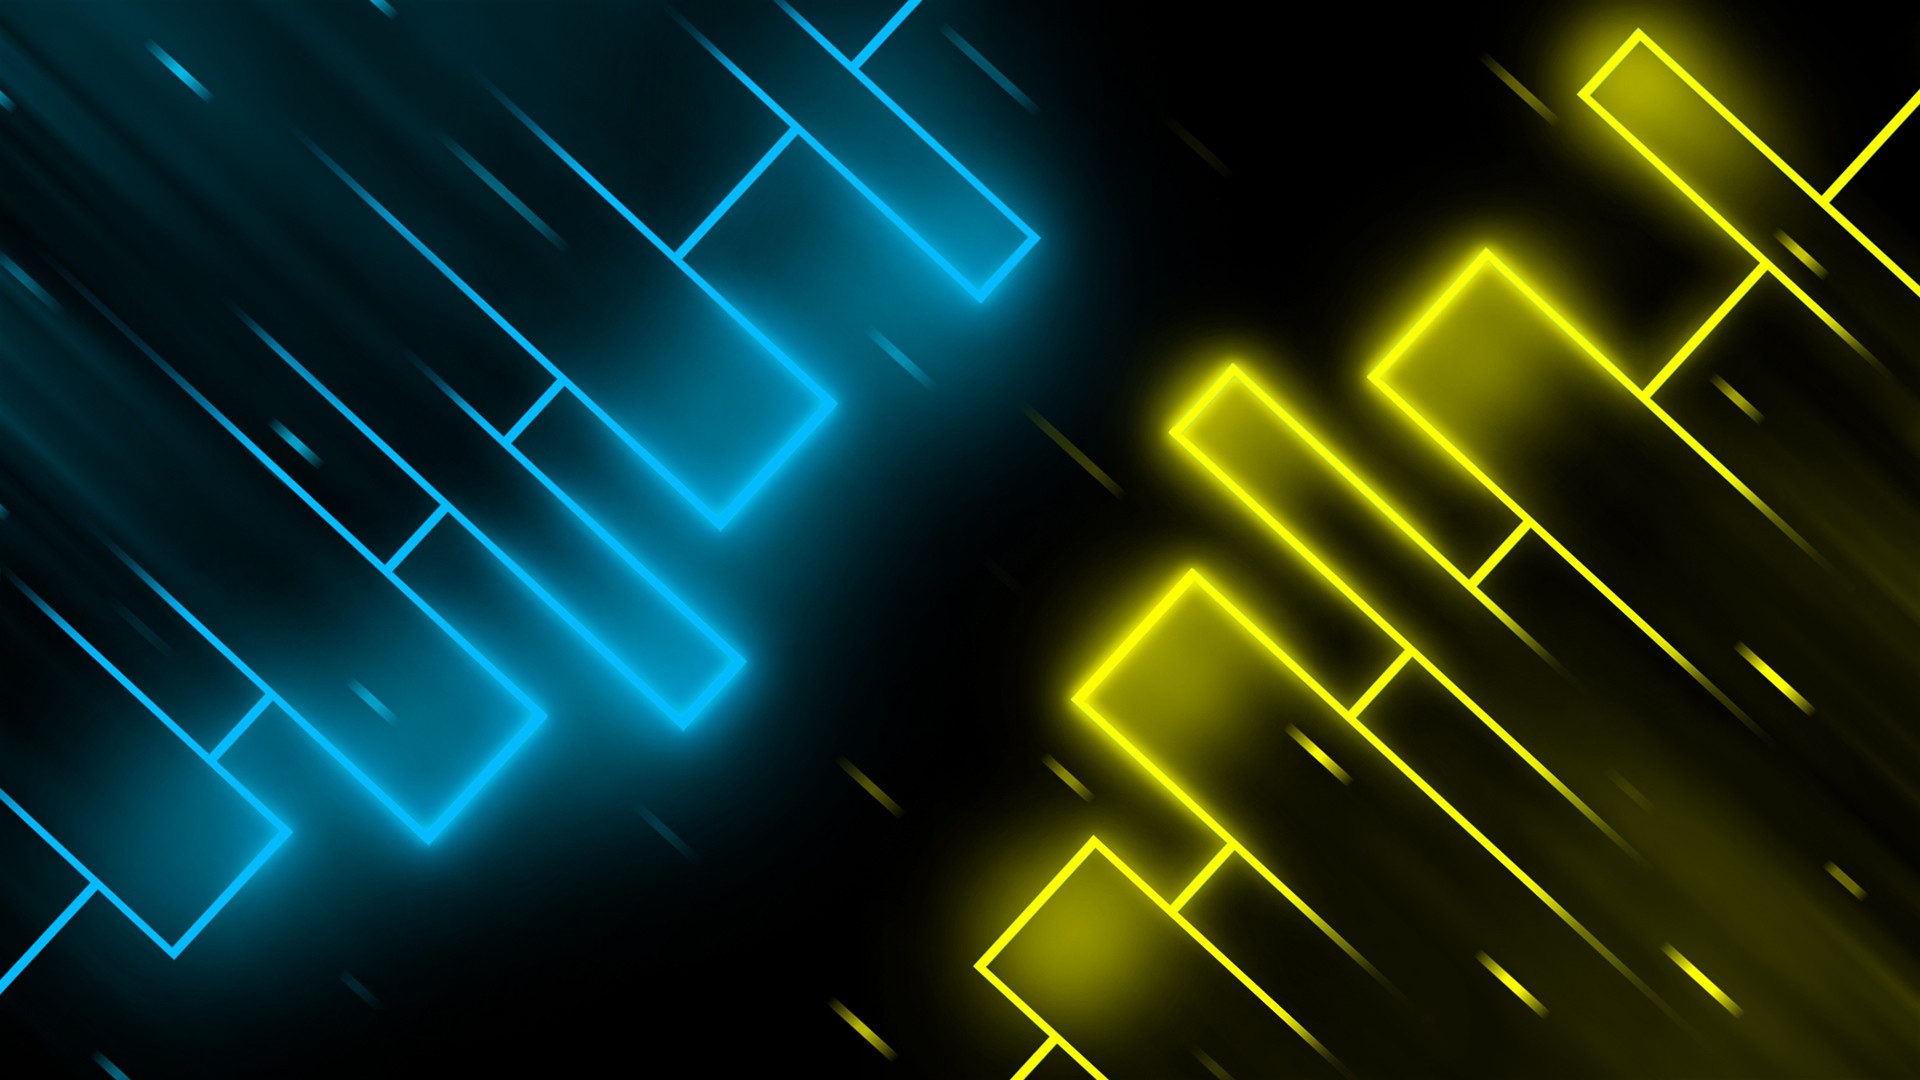 Blue And Yellow Wallpaper | PixelsTalk.Net